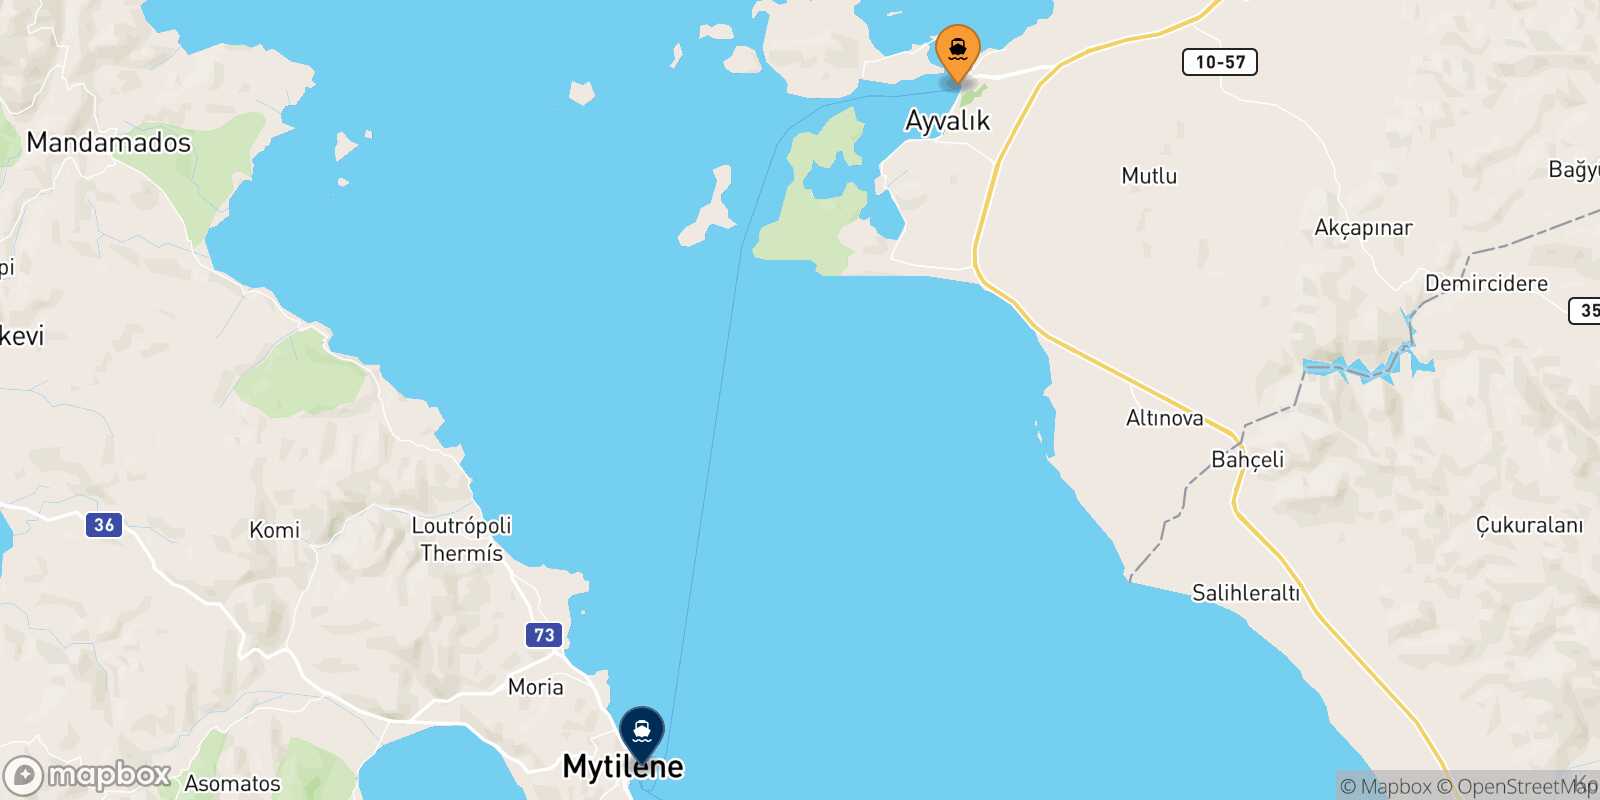 Mapa de los destinos alcanzables de Ayvalik